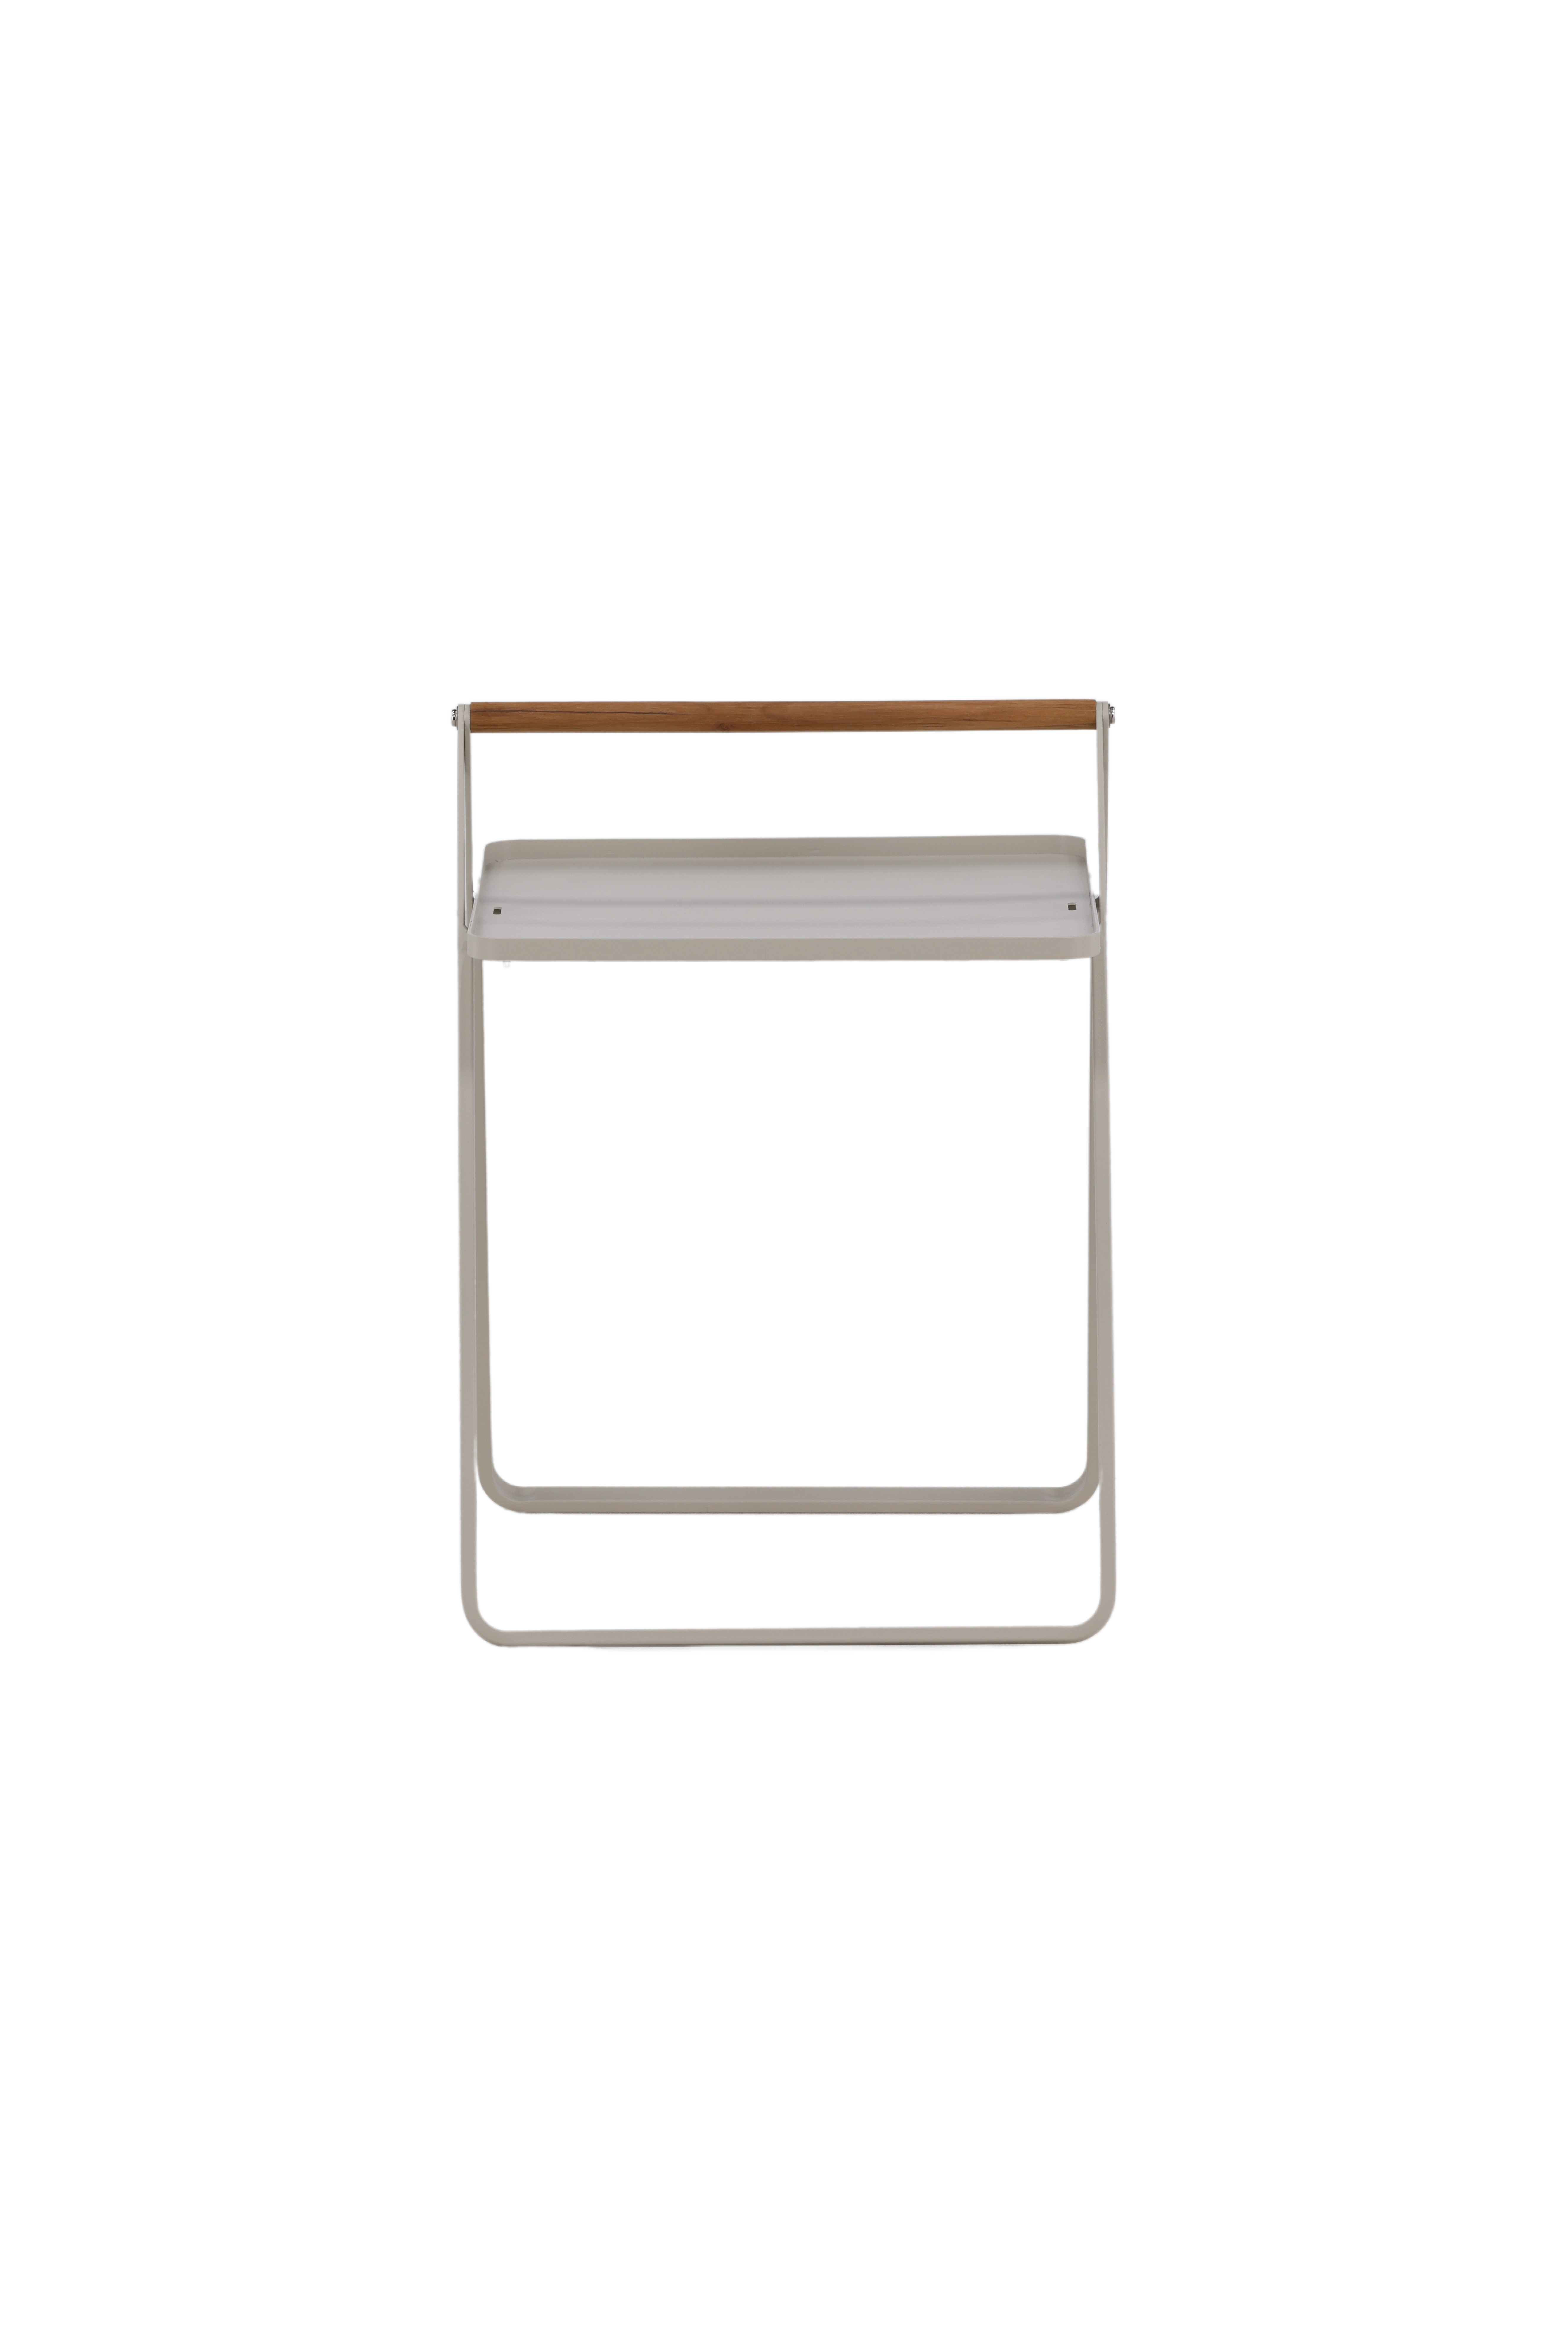 VENTURE DESIGN Clarin udendørs sidebord, m. teaktræ håndtag, kvadratisk - beige stål (45x45)